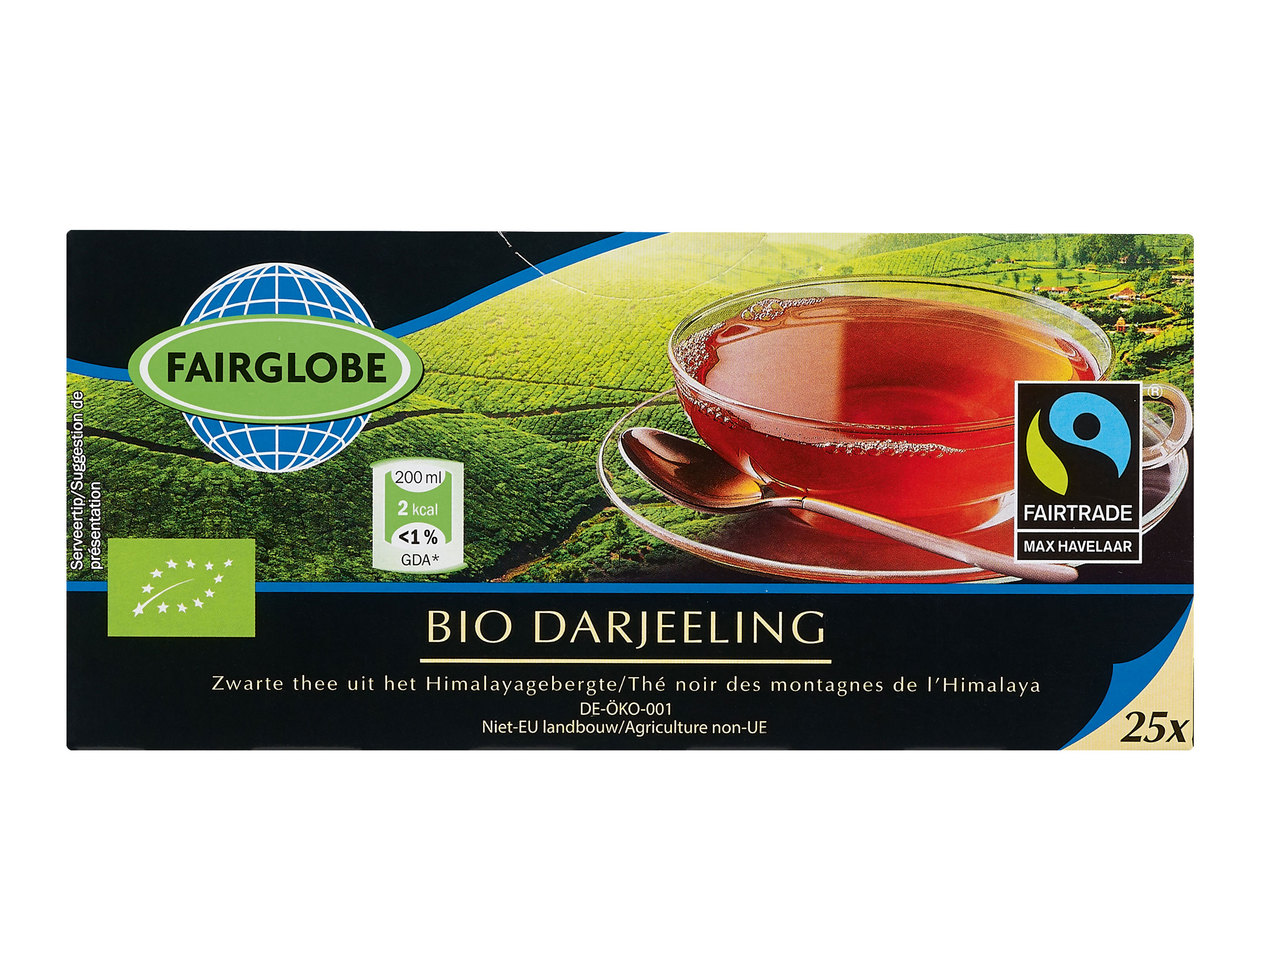 Bio-Fairtrade-Tee